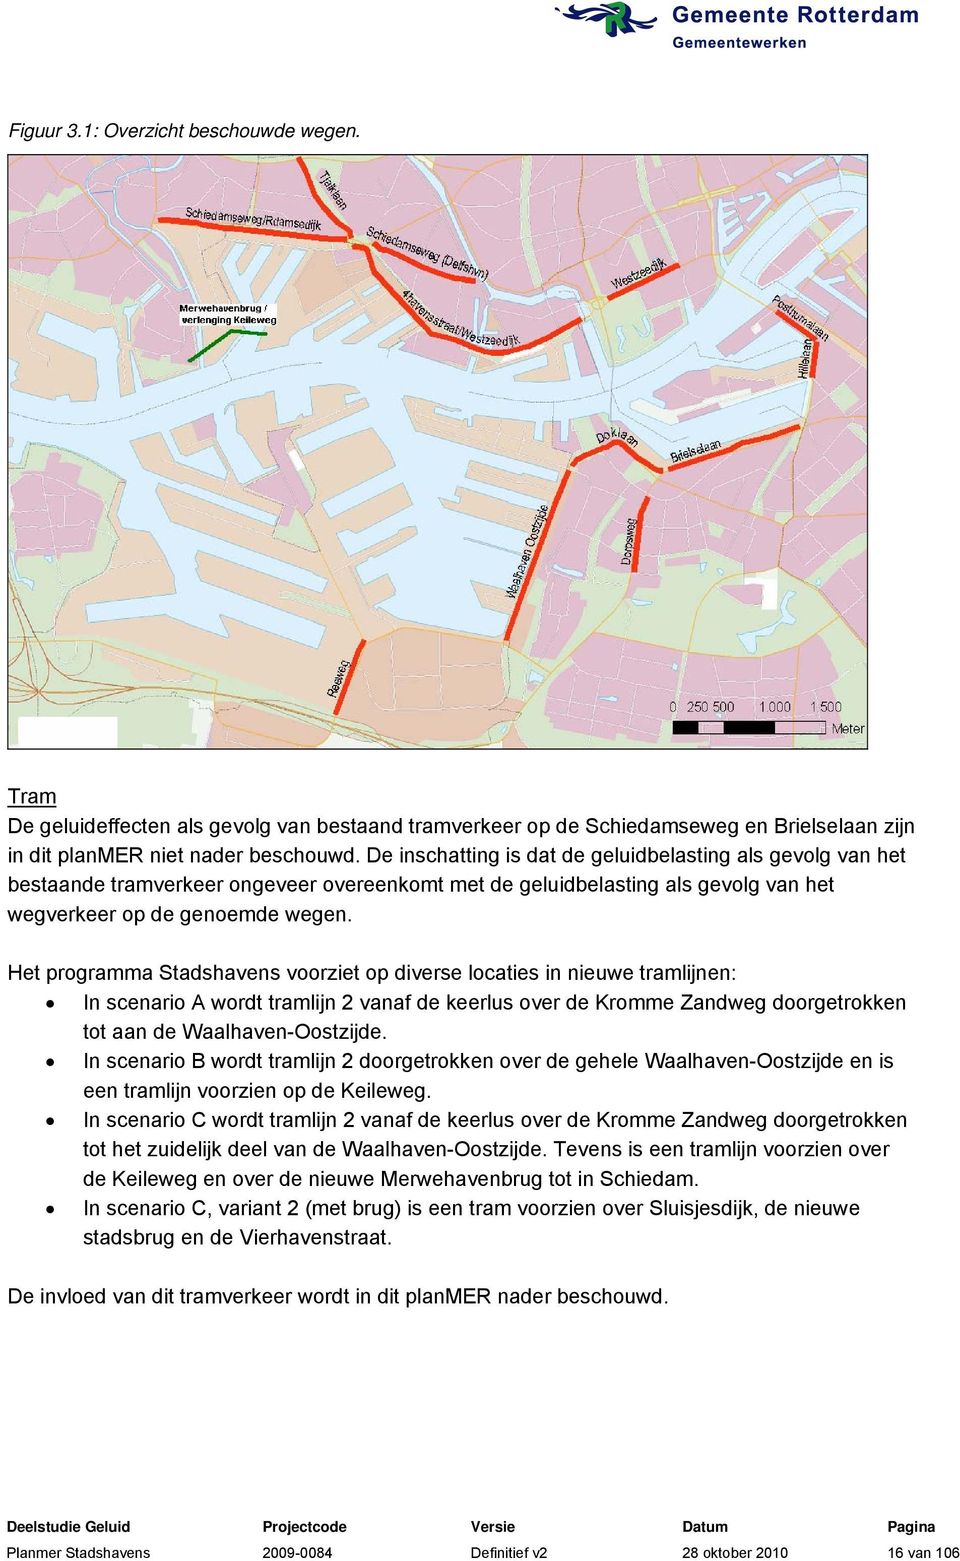 Het programma Stadshavens voorziet op diverse locaties in nieuwe tramlijnen: In scenario A wordt tramlijn 2 vanaf de keerlus over de Kromme Zandweg doorgetrokken tot aan de Waalhaven-Oostzijde.